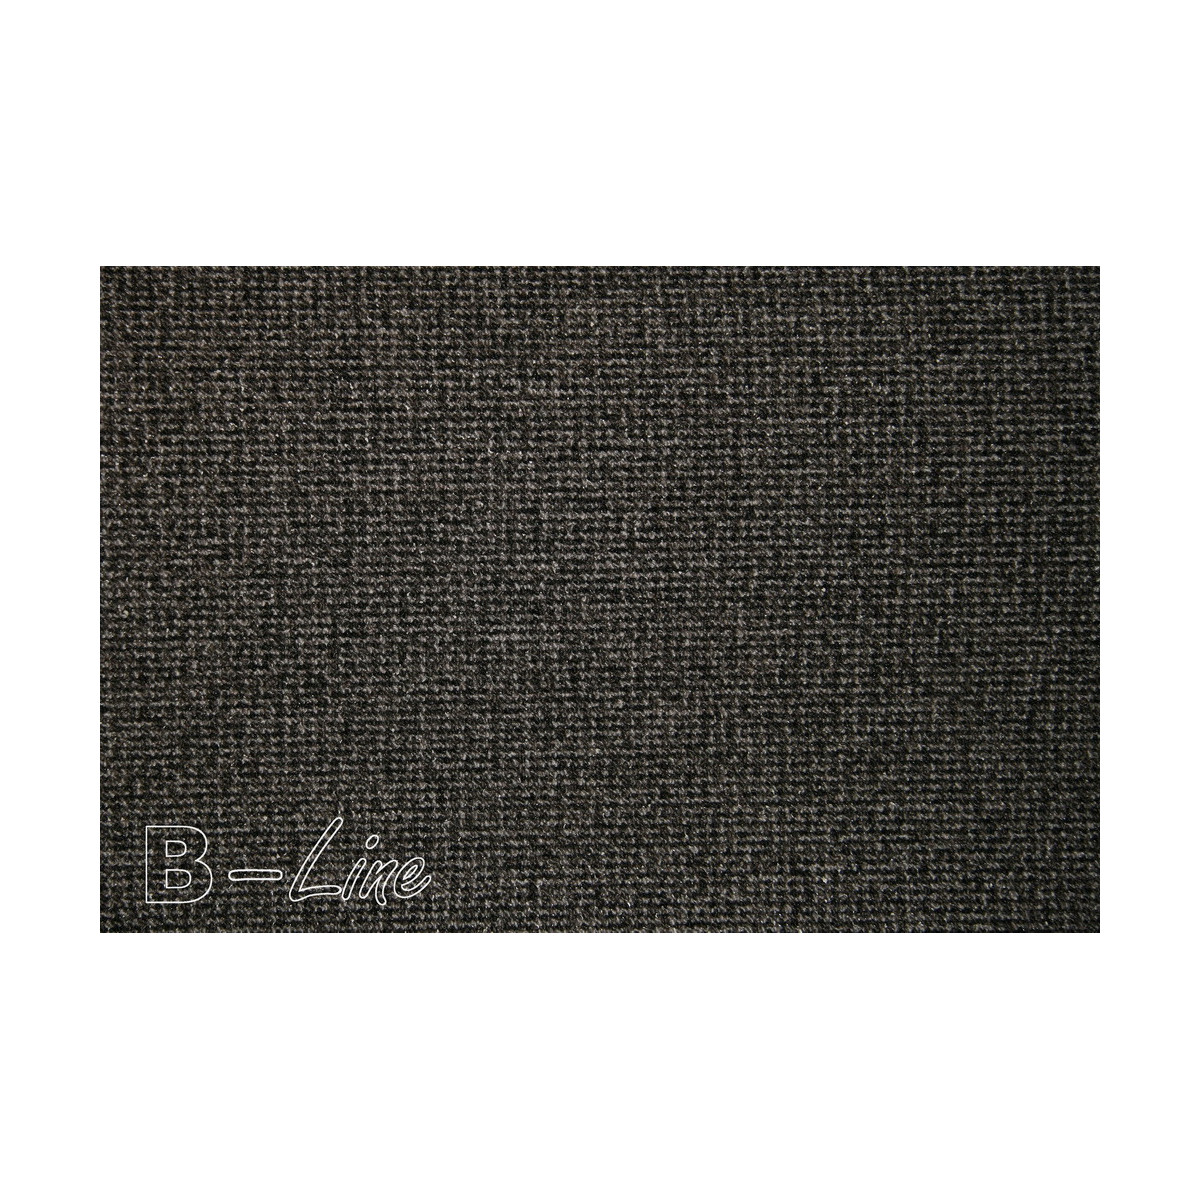 Metrážový koberec Tweed 98, zátěžový